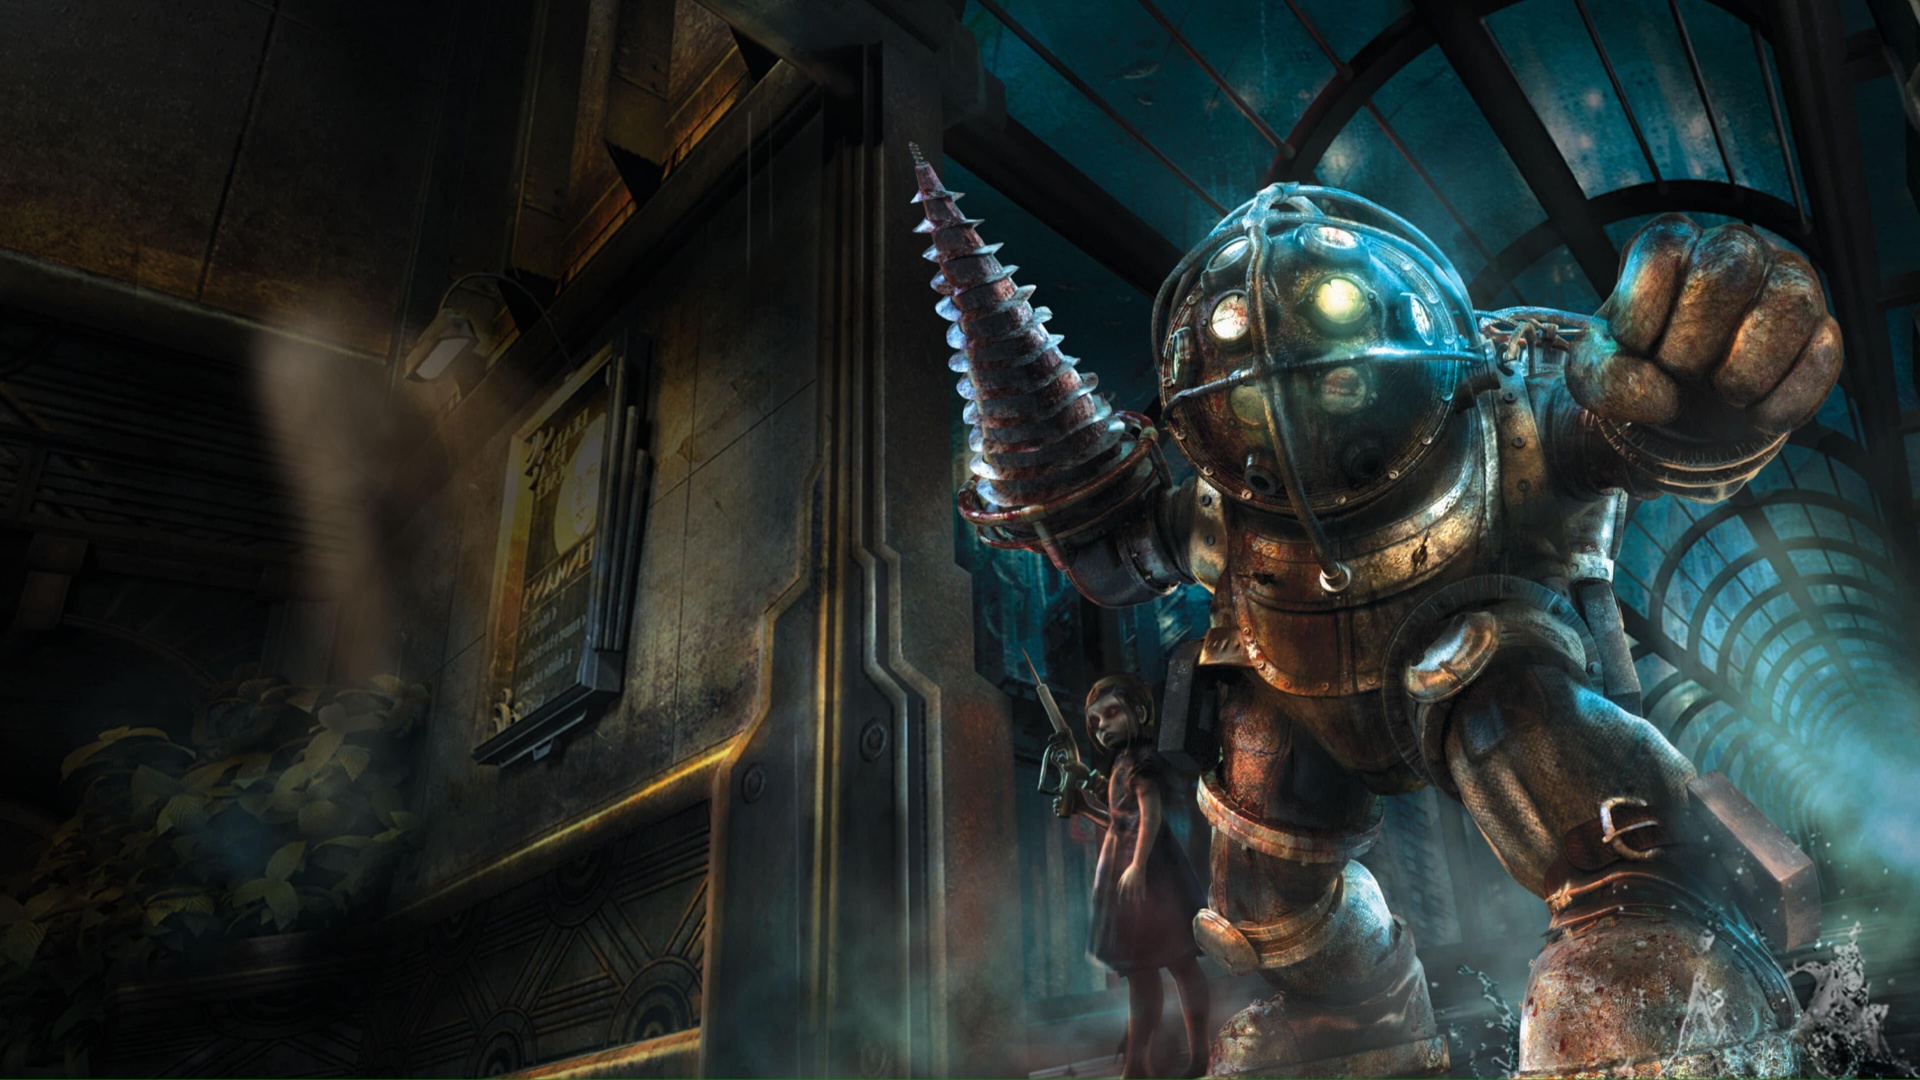 Arte promocional de BioShock apresentando o ameaçador Big Daddy em seu traje blindado.